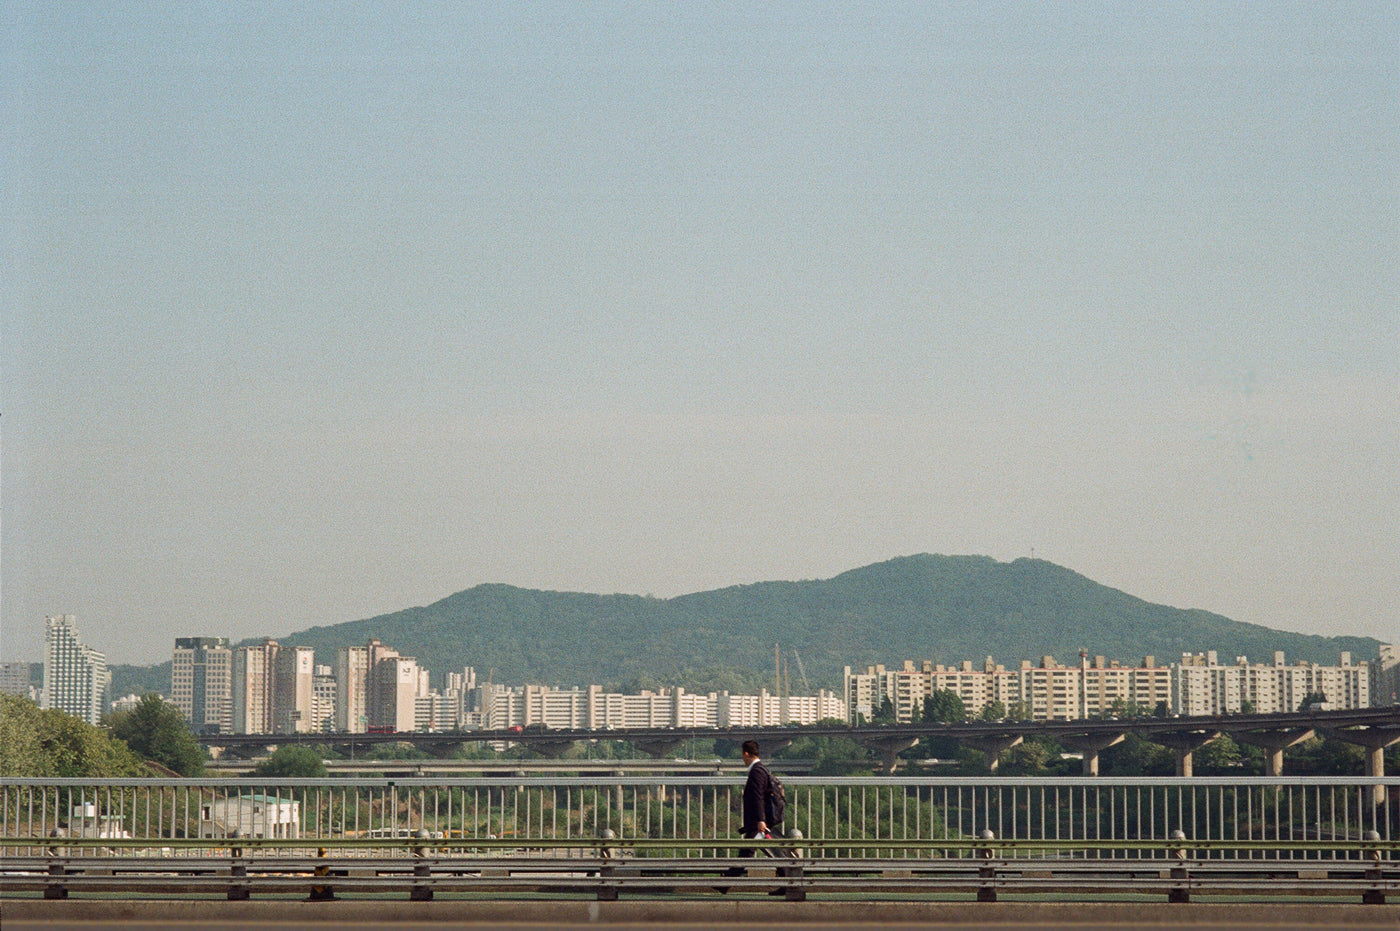 Photograph taken in Seoul South Korea